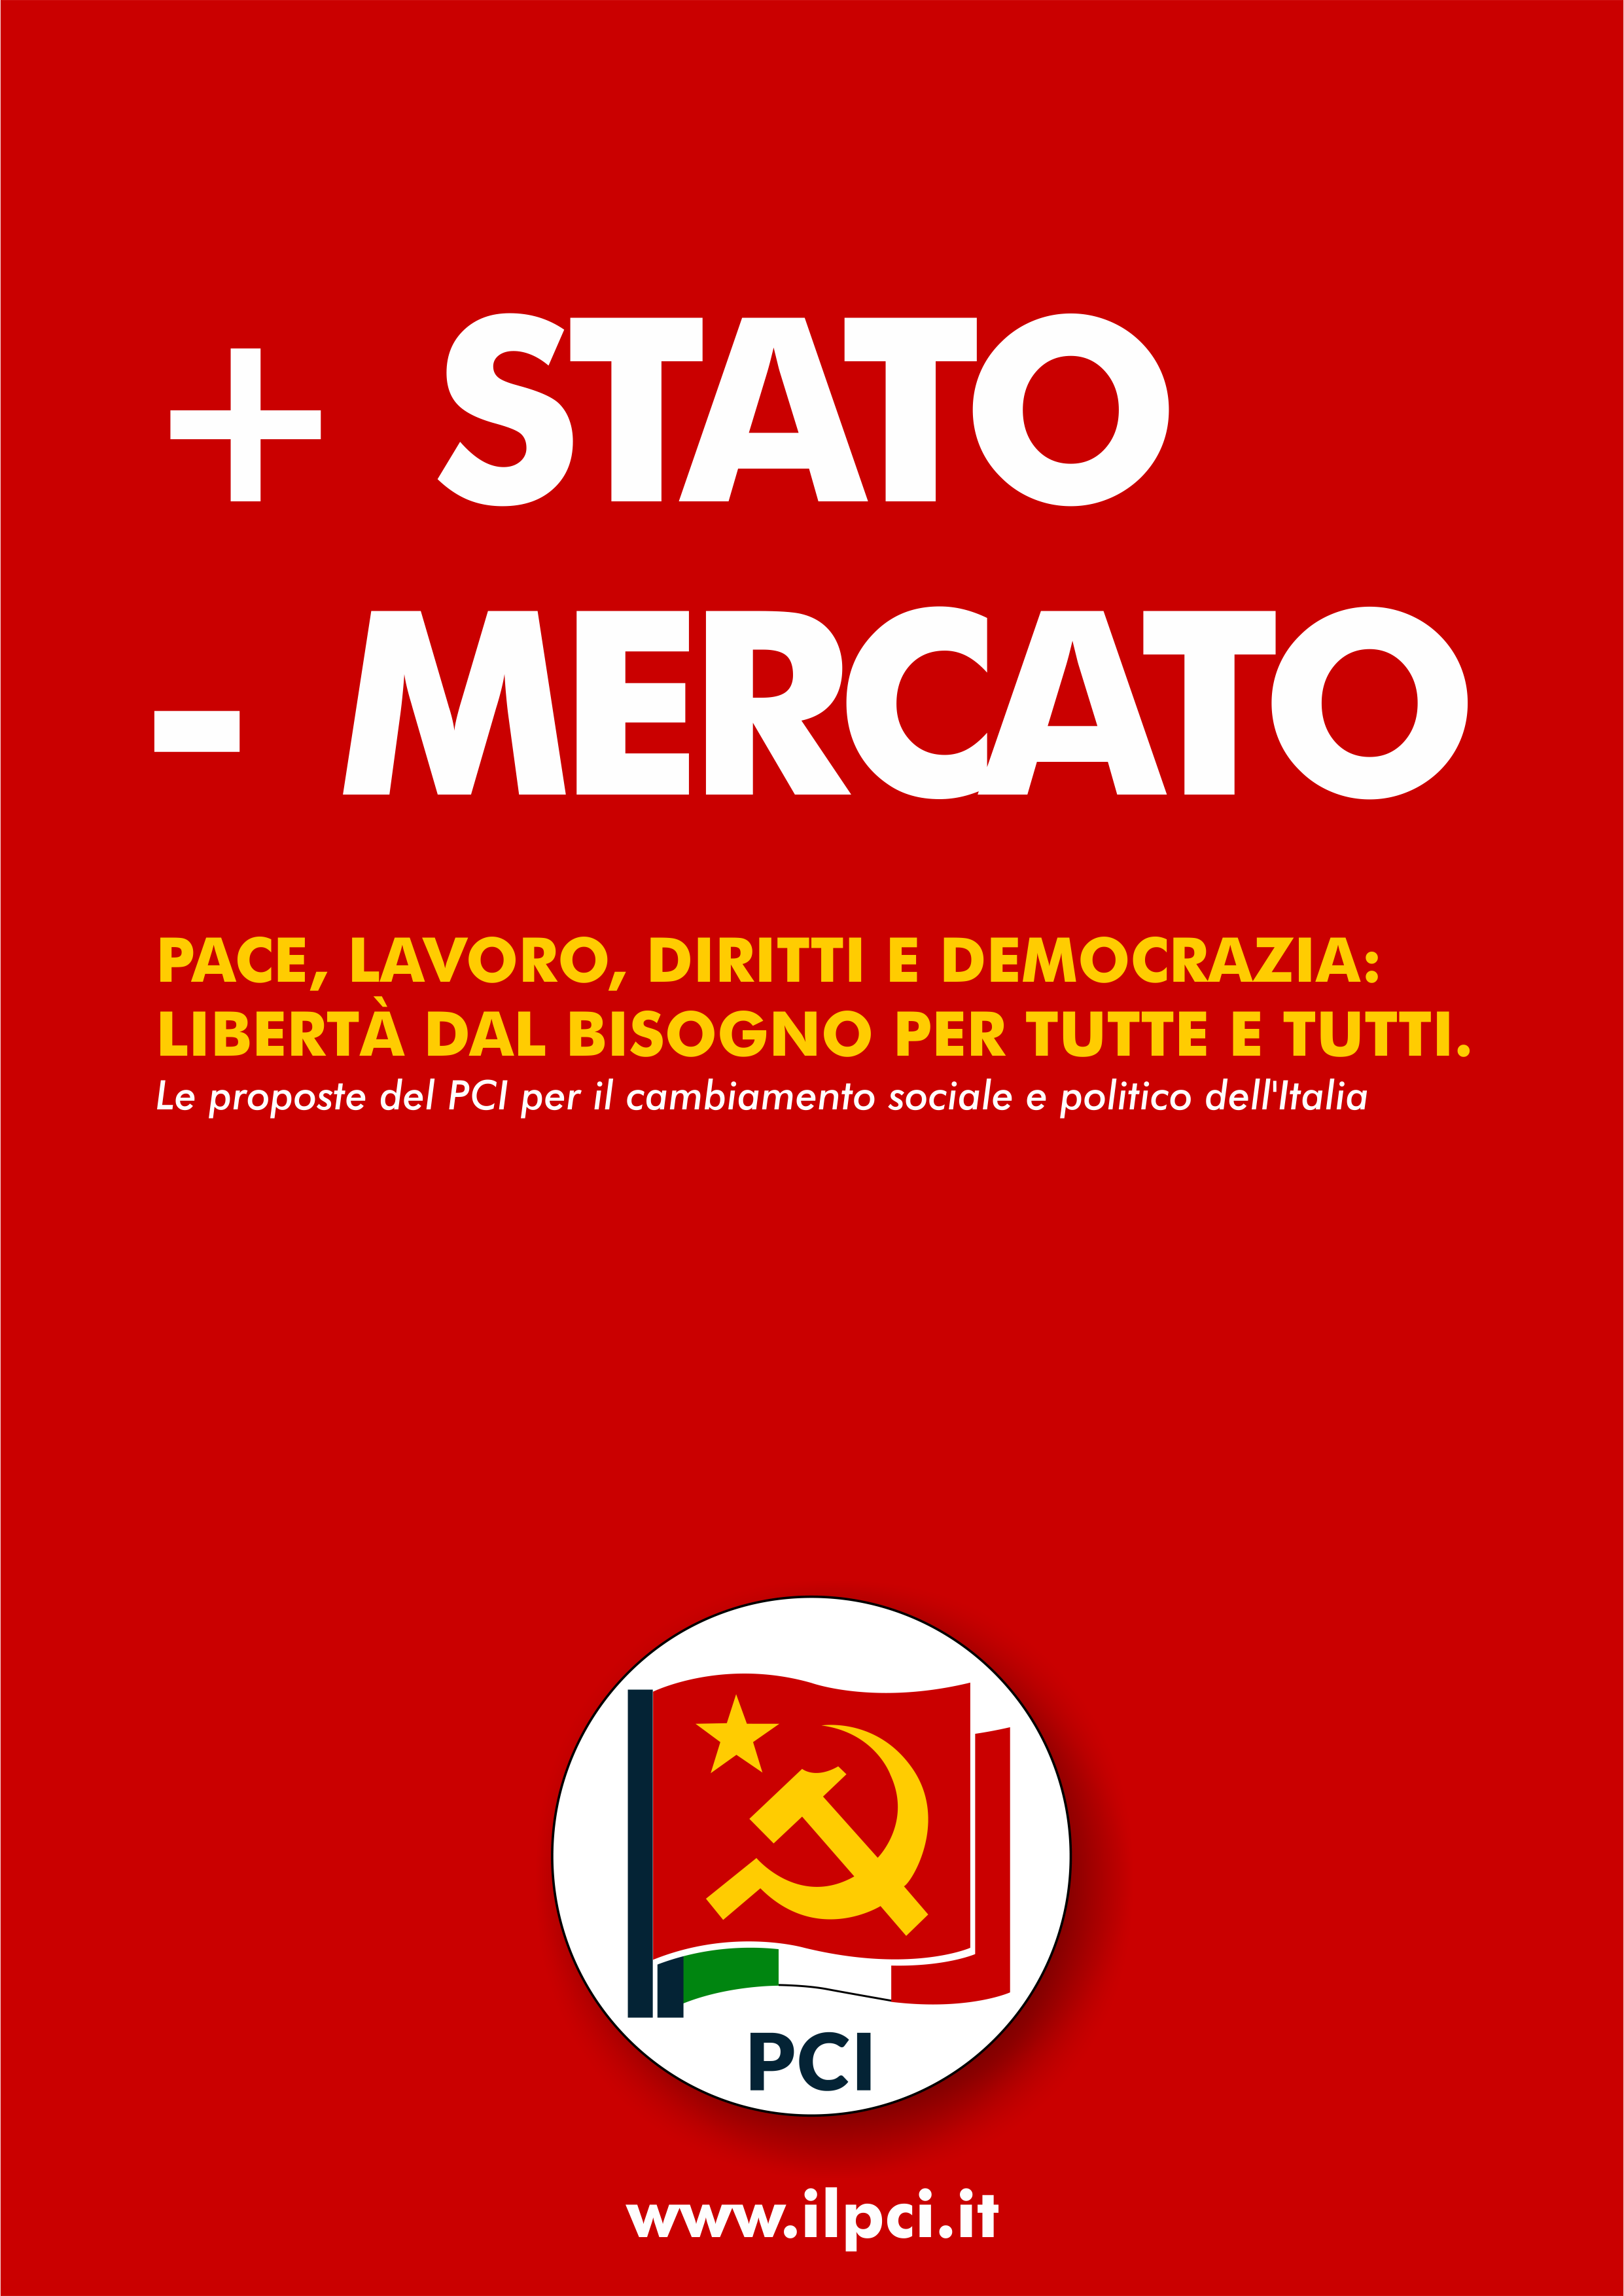 Sabato 22 Luglio sull'ultima de 'Il Manifesto' una sintesi del Programma  del PCI - Partito Comunista Italiano